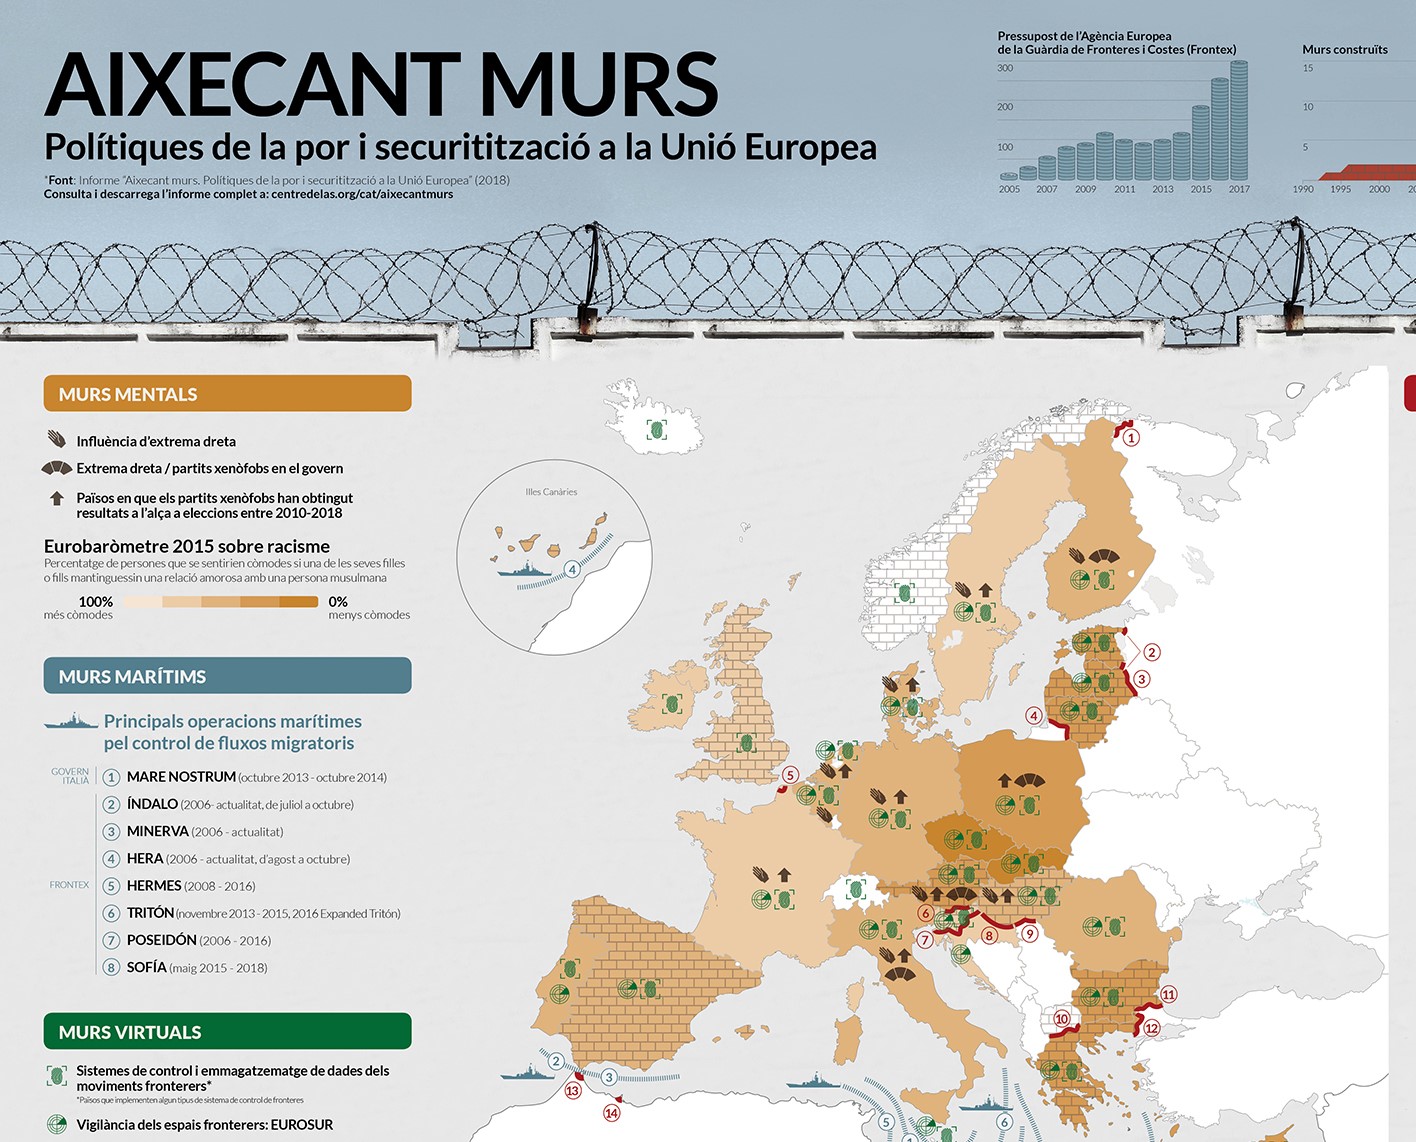 Infografia “Aixecant Murs. Polítiques de la por i securitització en la Unió Europea”